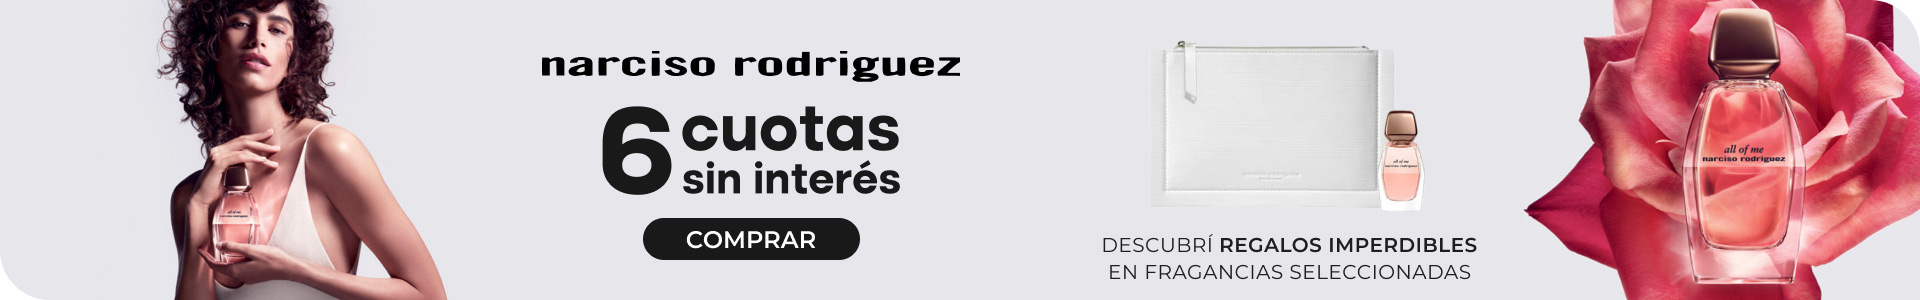 Narciso Rodriguez | 6 cuotas sin interés + regalos por compra